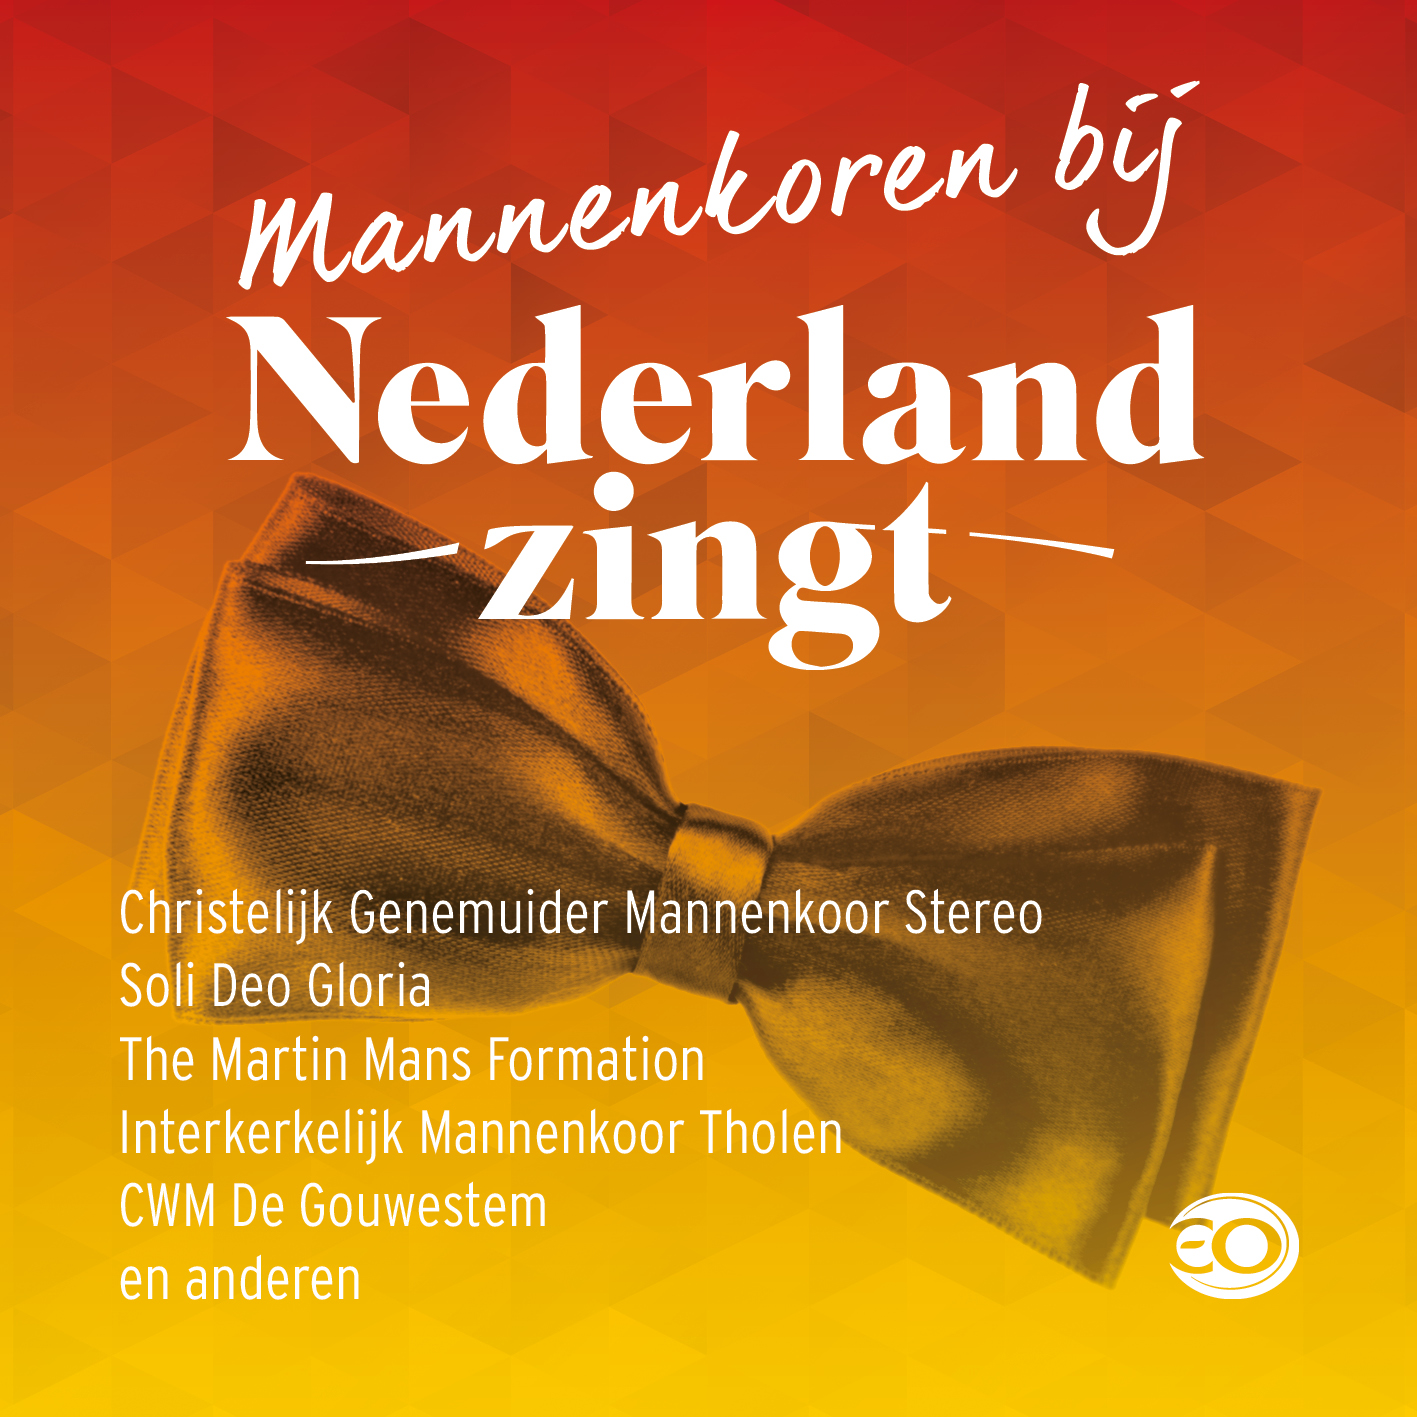 Mannenkoren bij Nederland Zingt